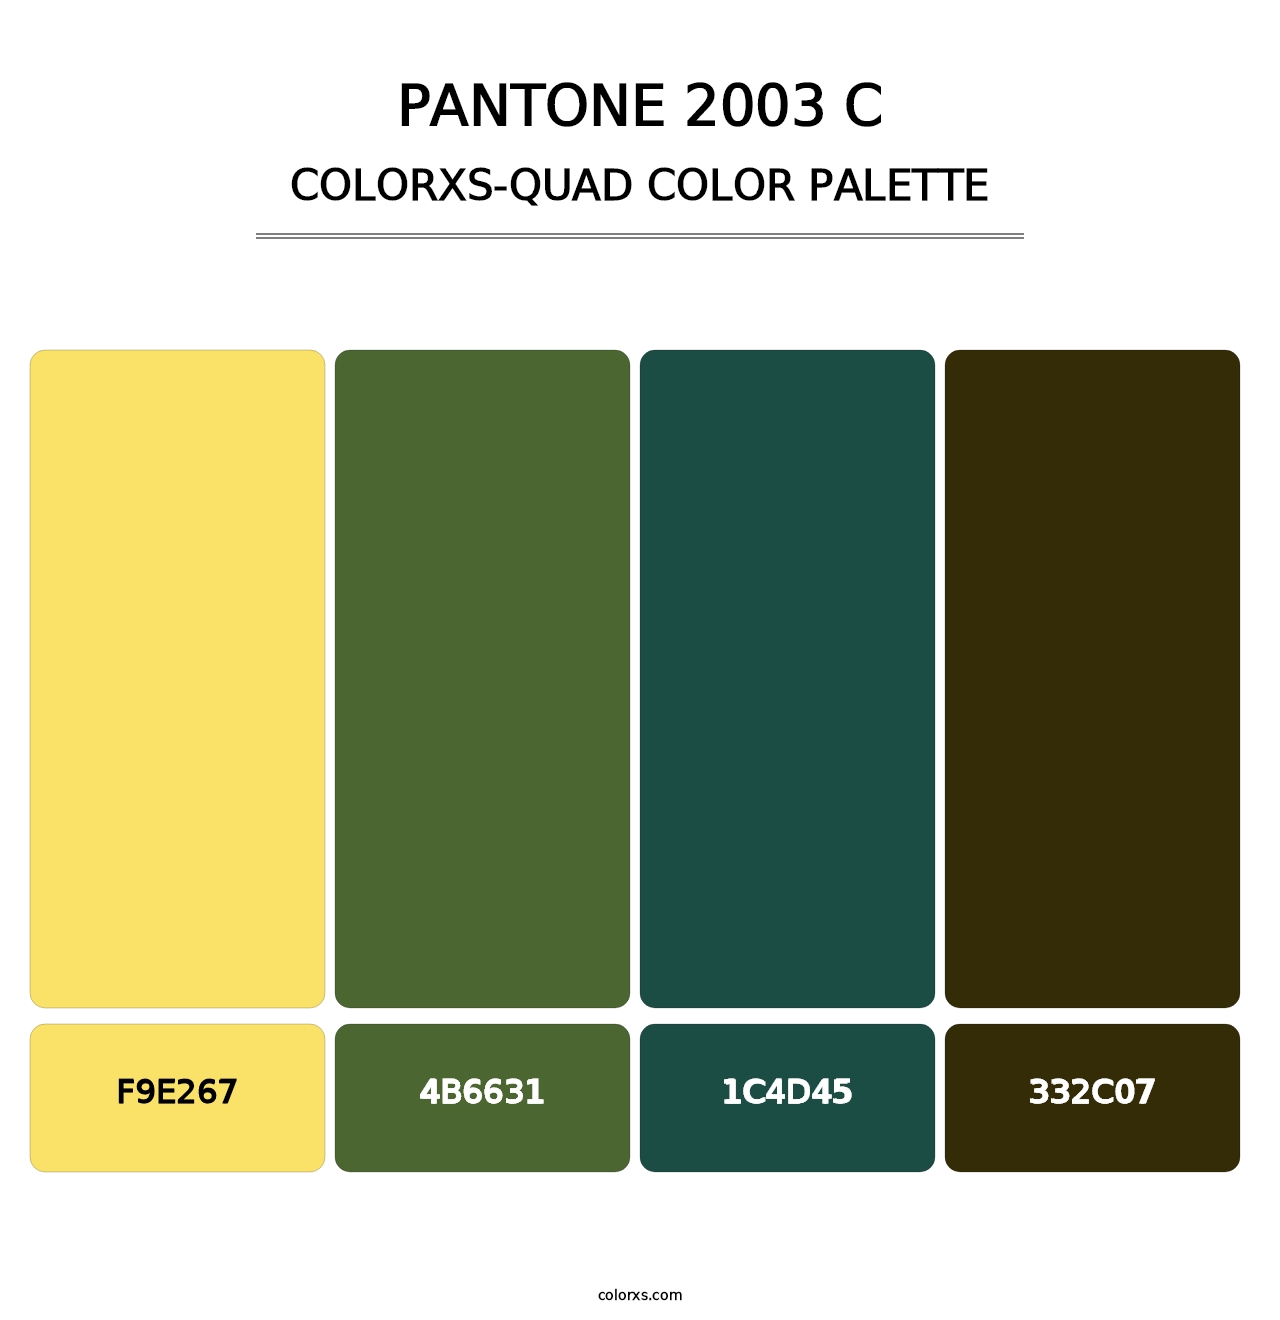 PANTONE 2003 C - Colorxs Quad Palette